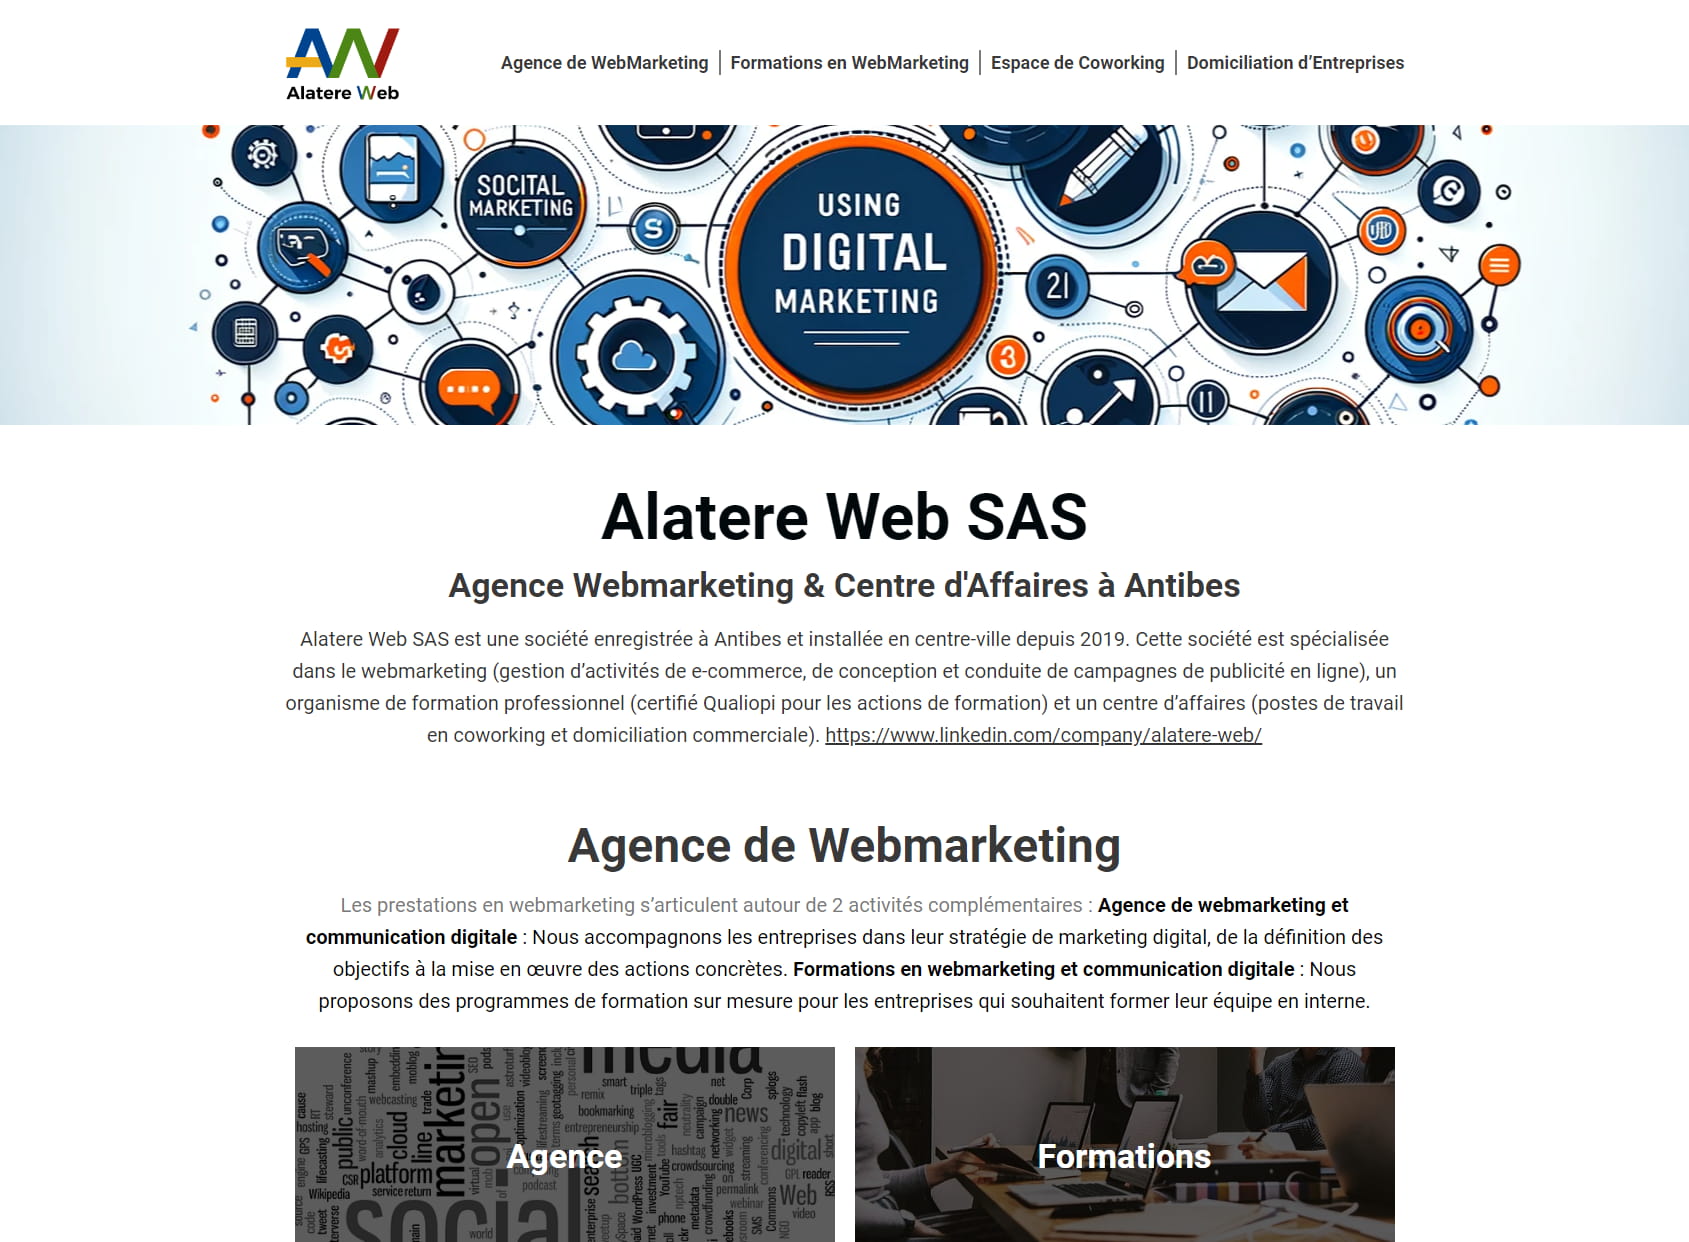 Alatere Web, Formations en Marketing / Communication Digitale